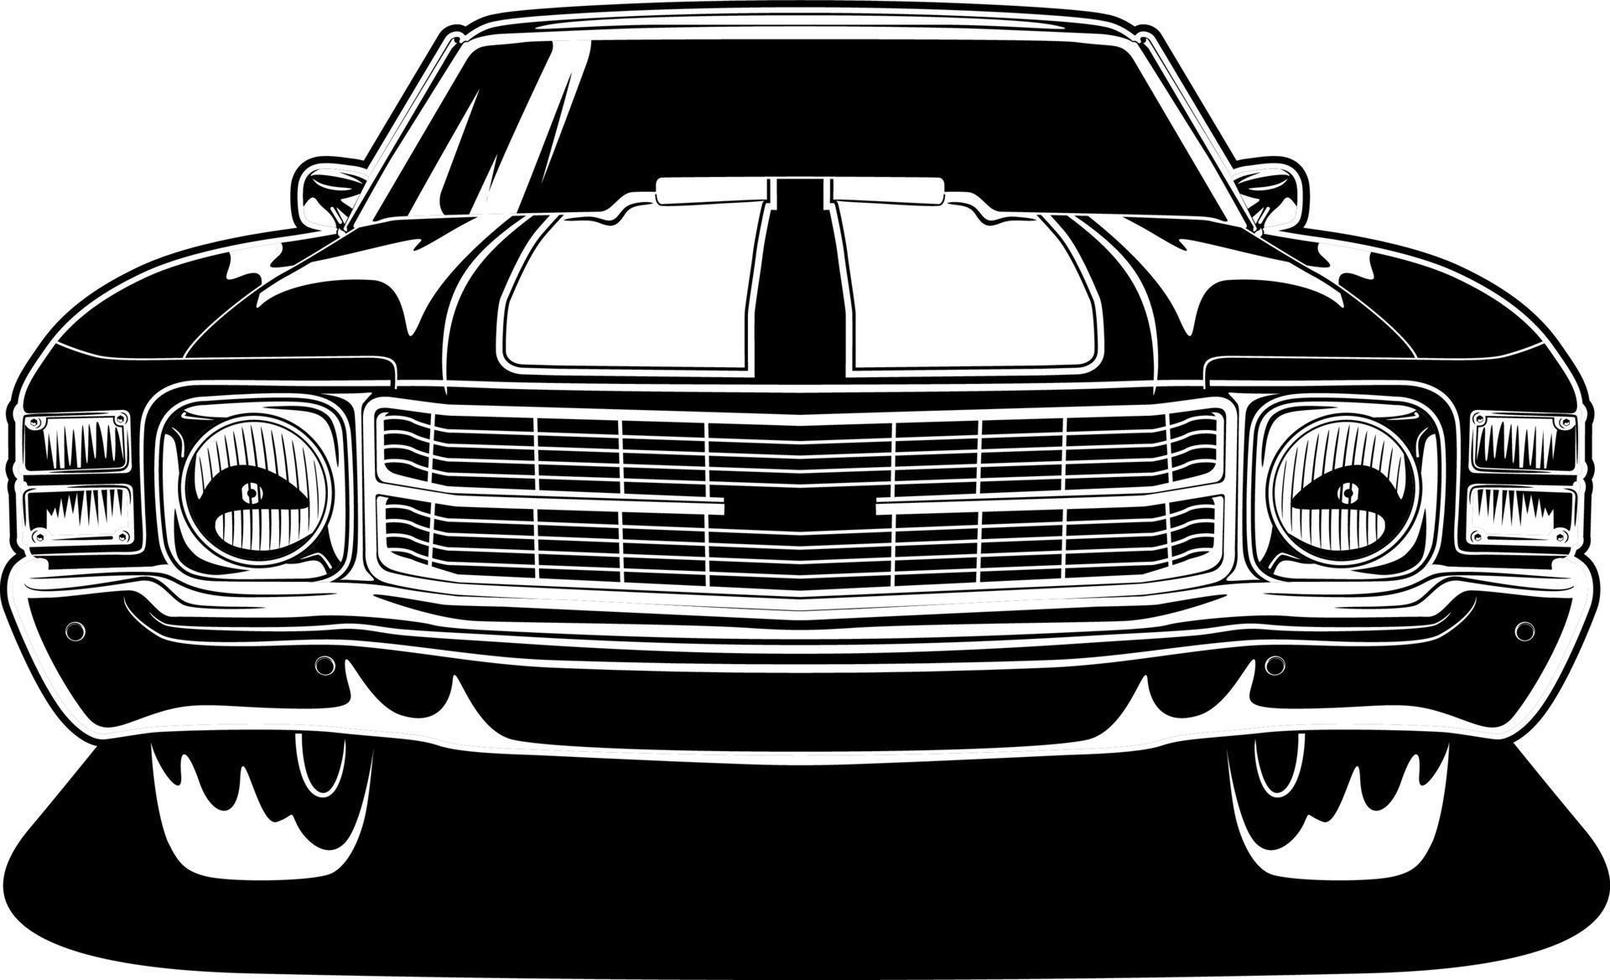 ilustração vetorial de carro preto e branco para design conceitual vetor